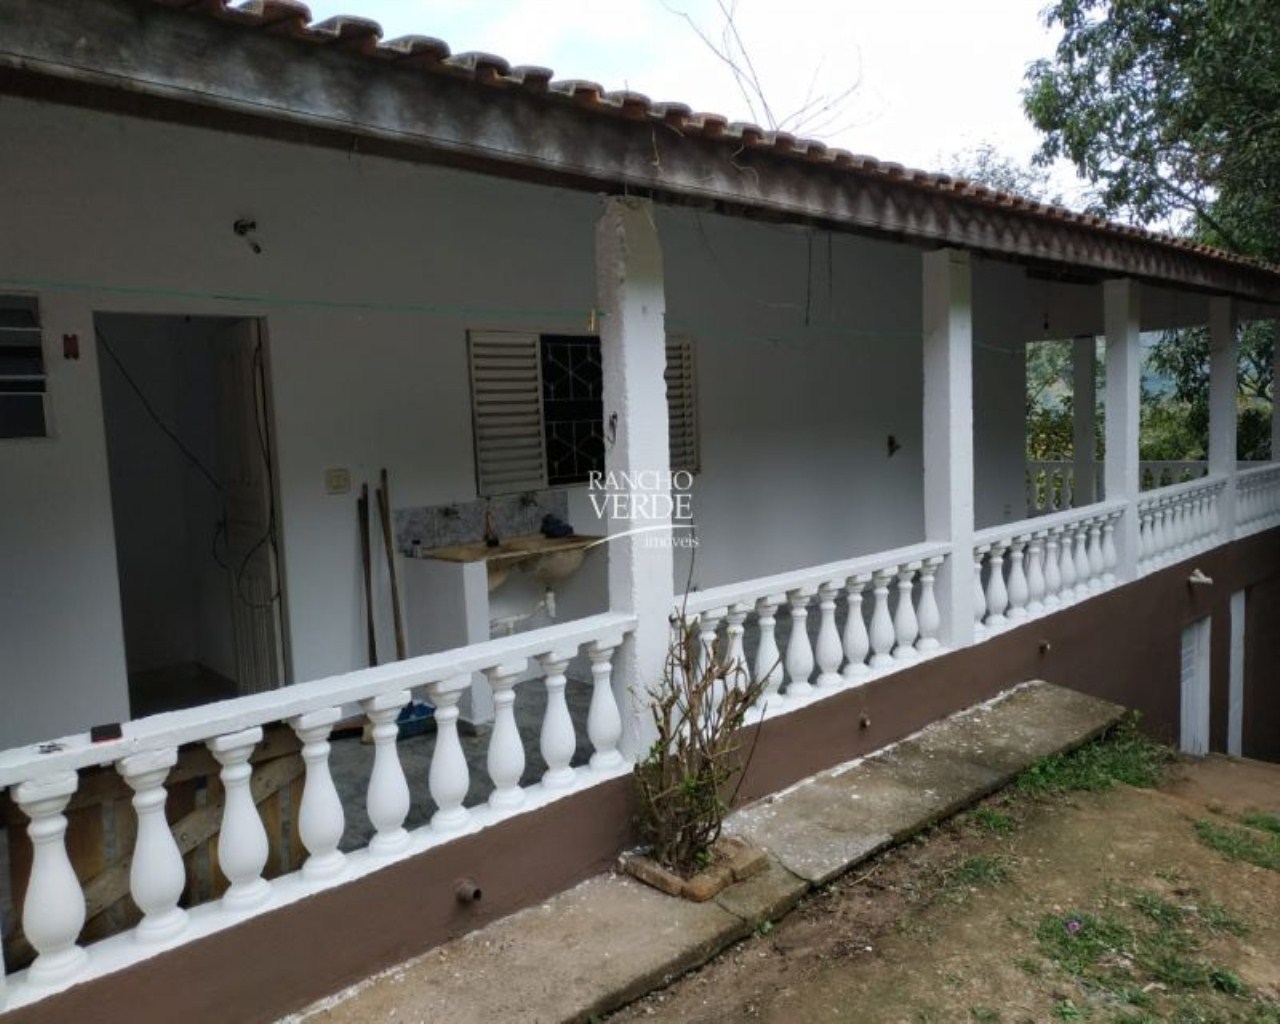 Chácara de 1 ha em São José dos Campos, SP